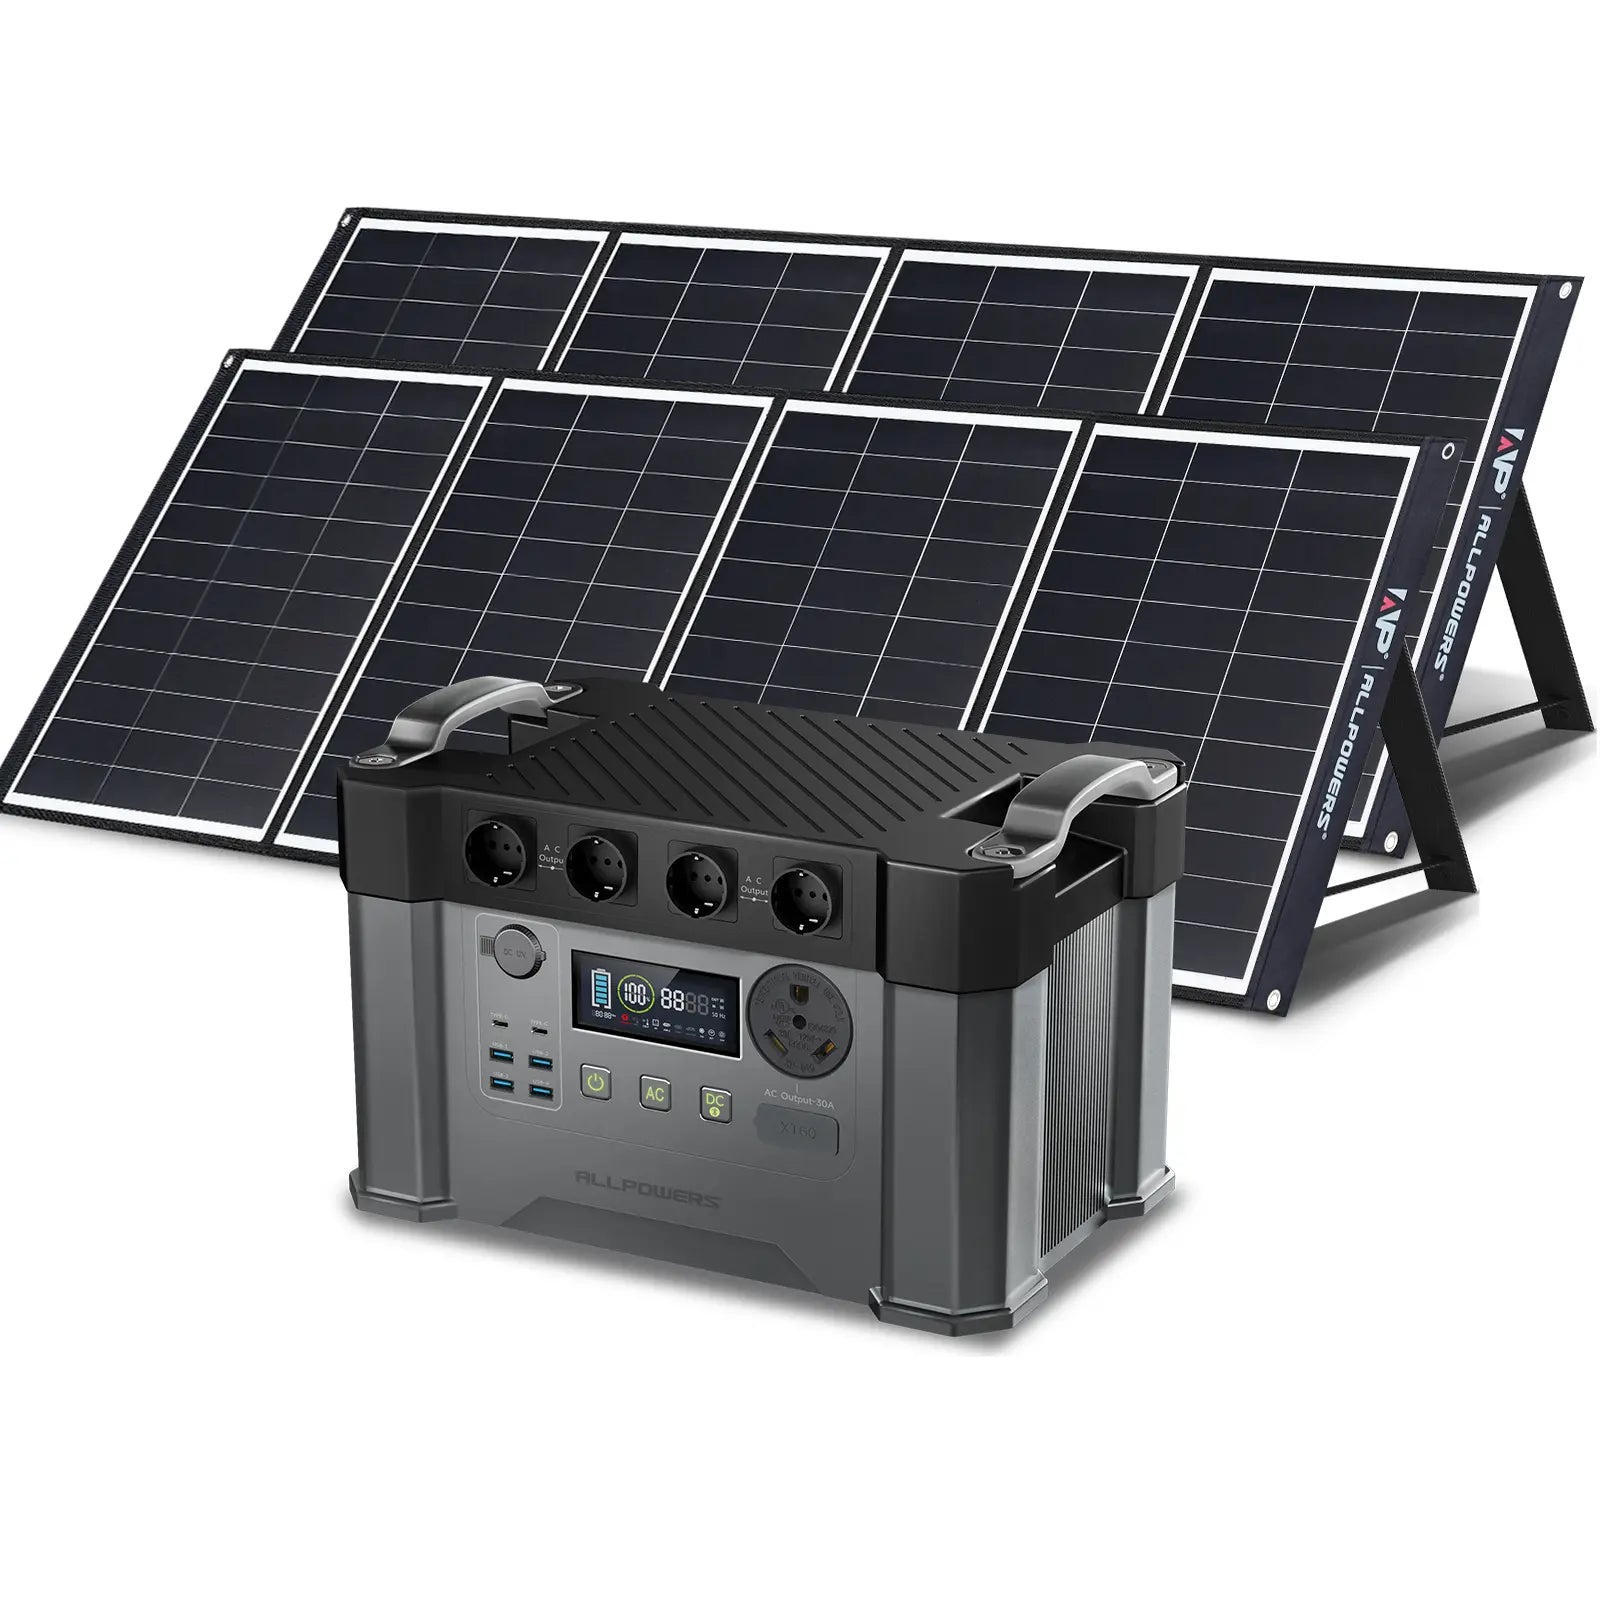 ALLPOWERS 2400W Generatore Solare (S2000 Pro + SP035 200W Pannello Solare)